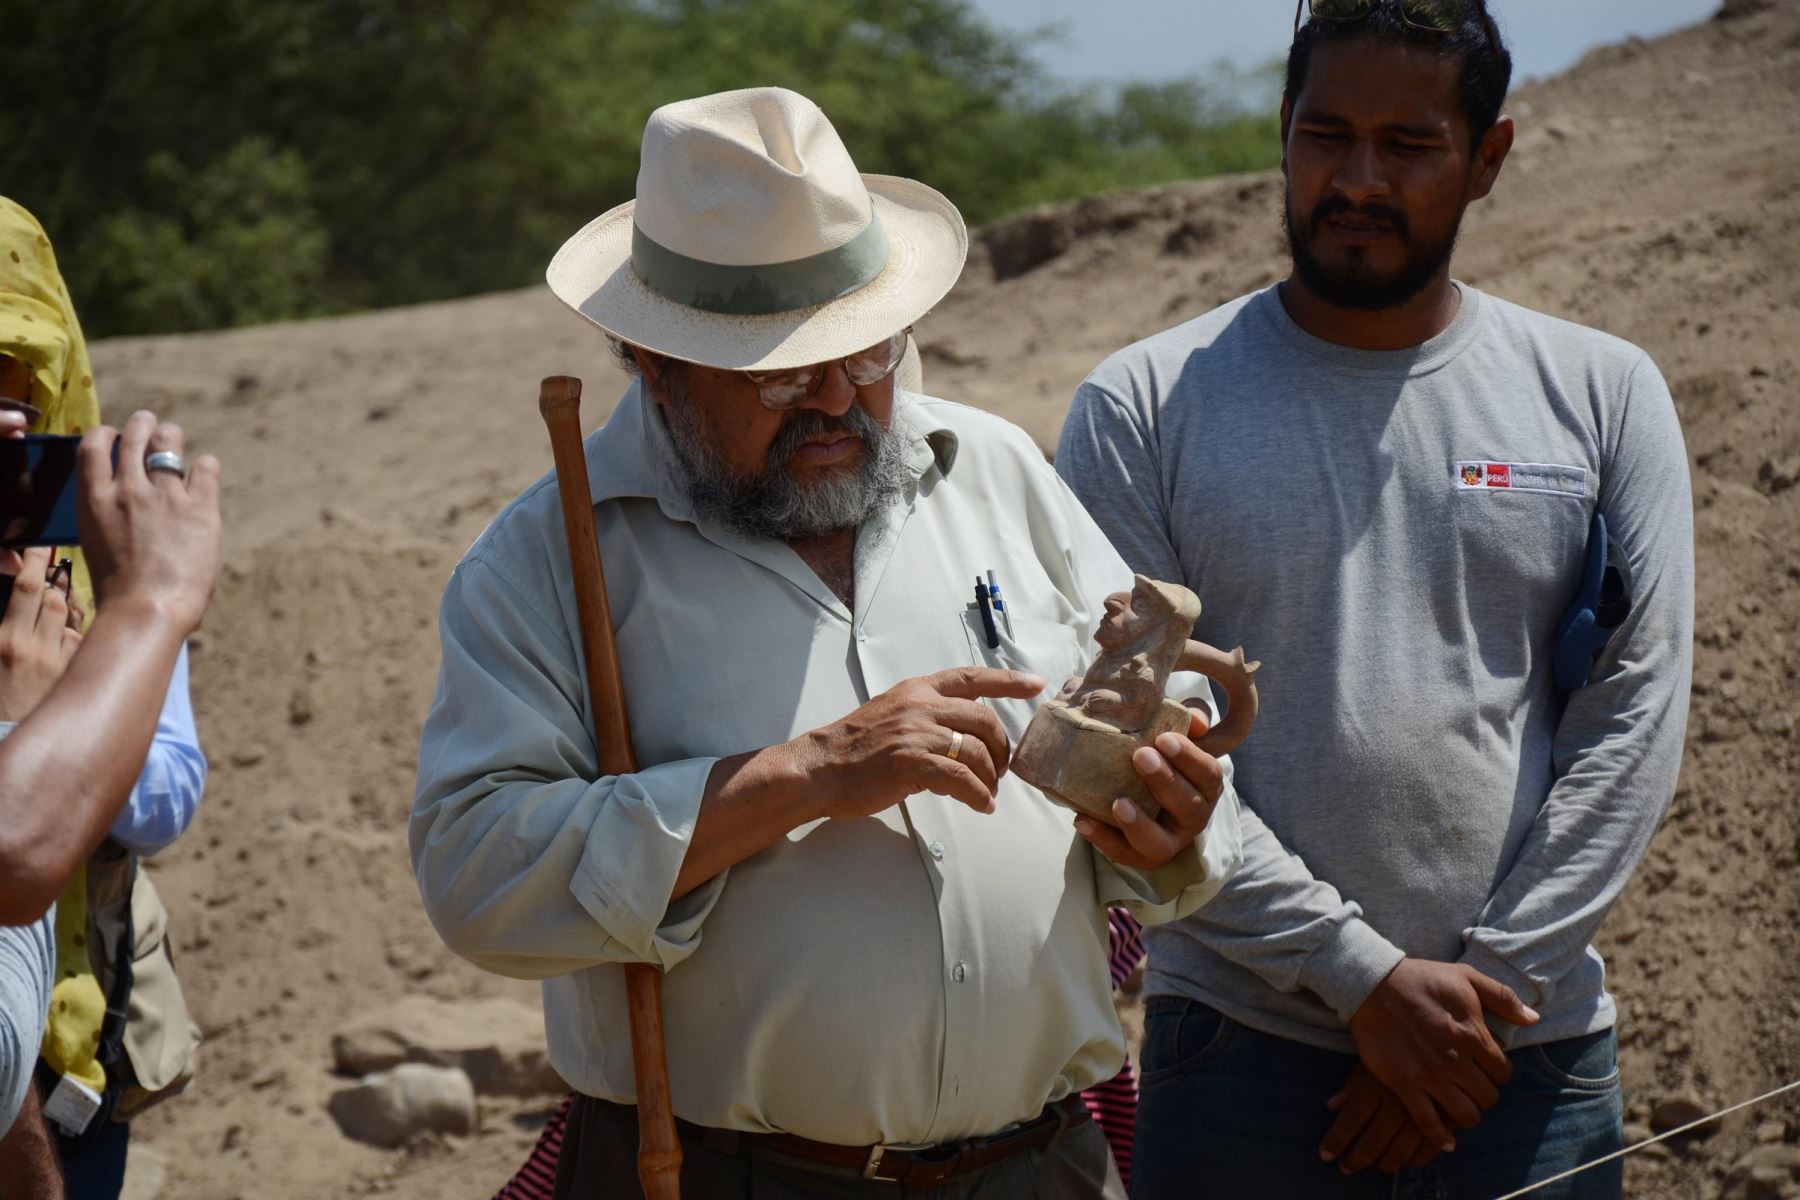 El arqueólogo Walter Alva reveló que se prevé publicar dos libros sobre arqueología del norte peruano. Foto: ANDINA/Difusión